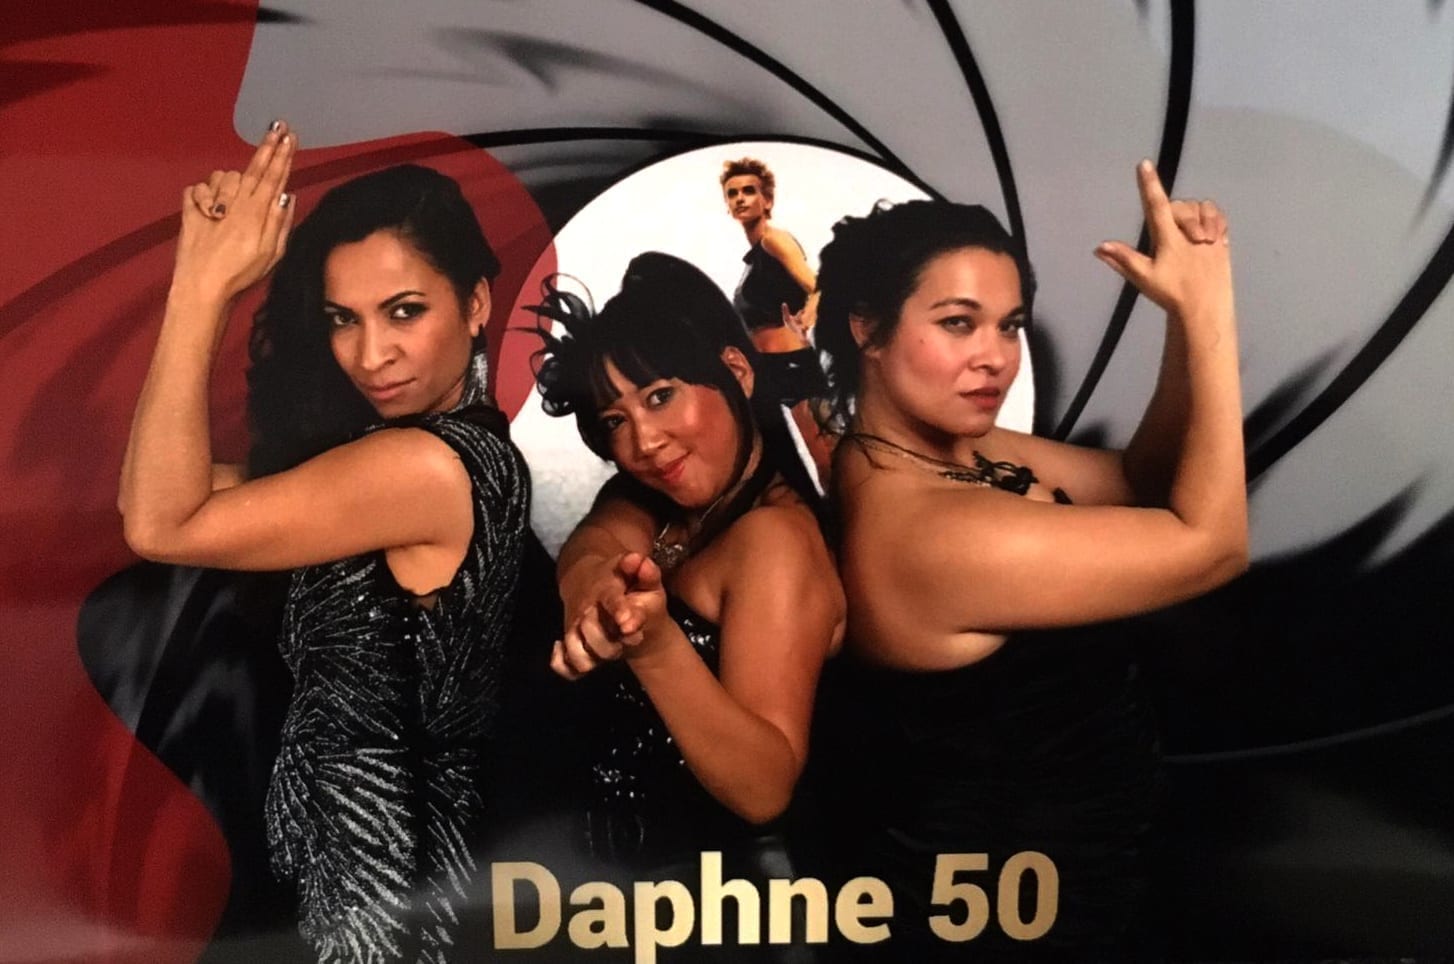 Daphne Deckers viert in James Bond stijl haar verjaardag met Boston Tea Party | feestband.com